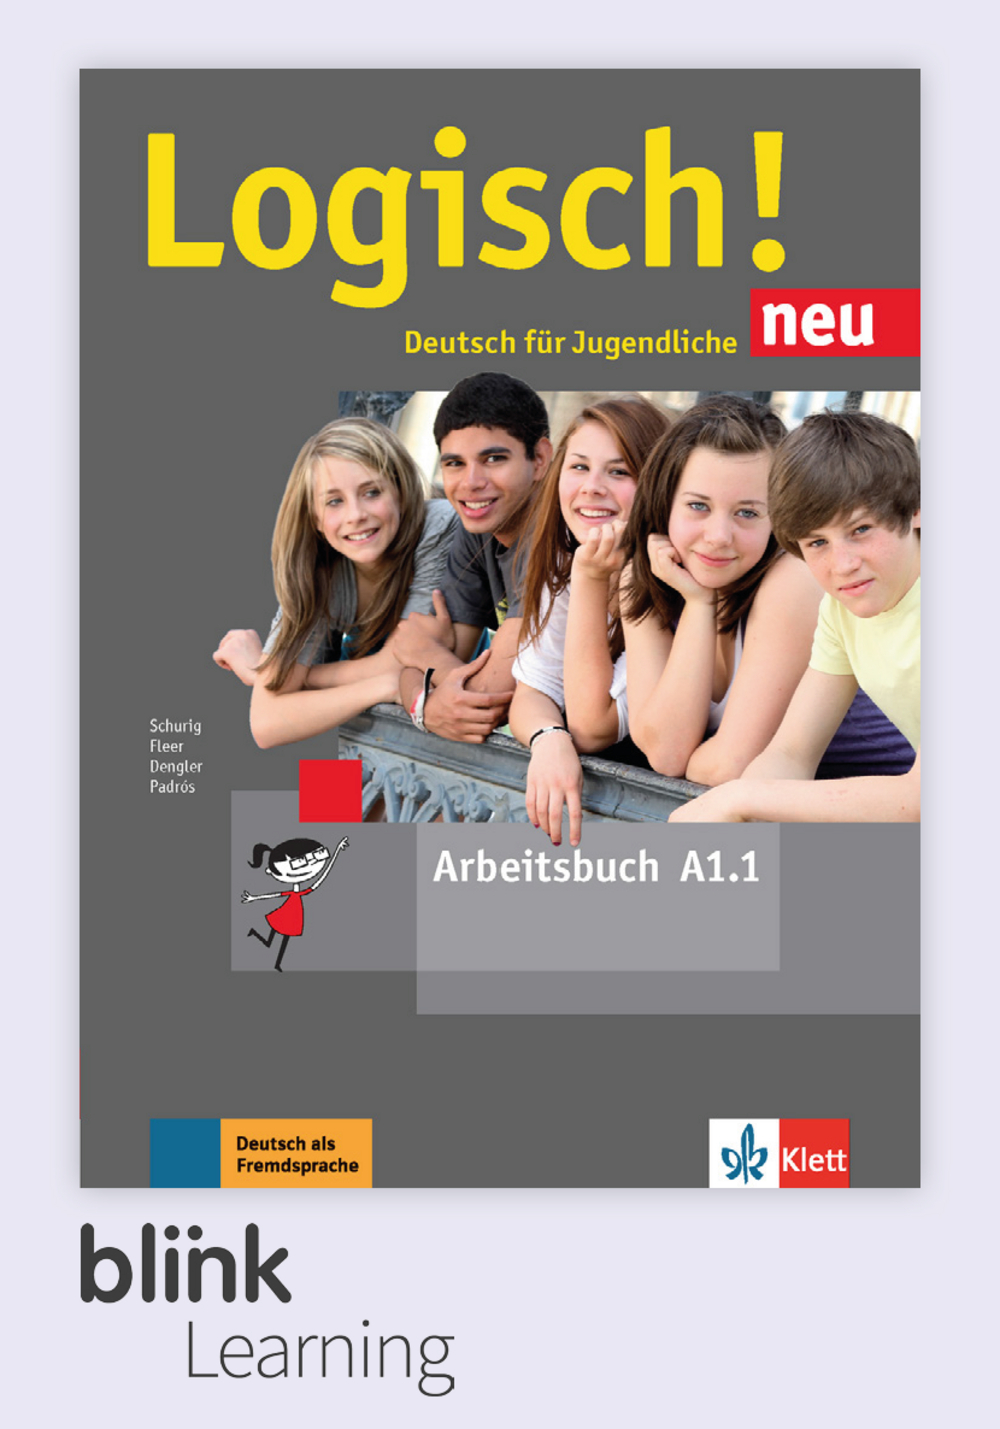 Logisch! neu A1.1 Digital Arbeitsbuch fur Unterrichtende / Цифровая рабочая тетрадь для учителя